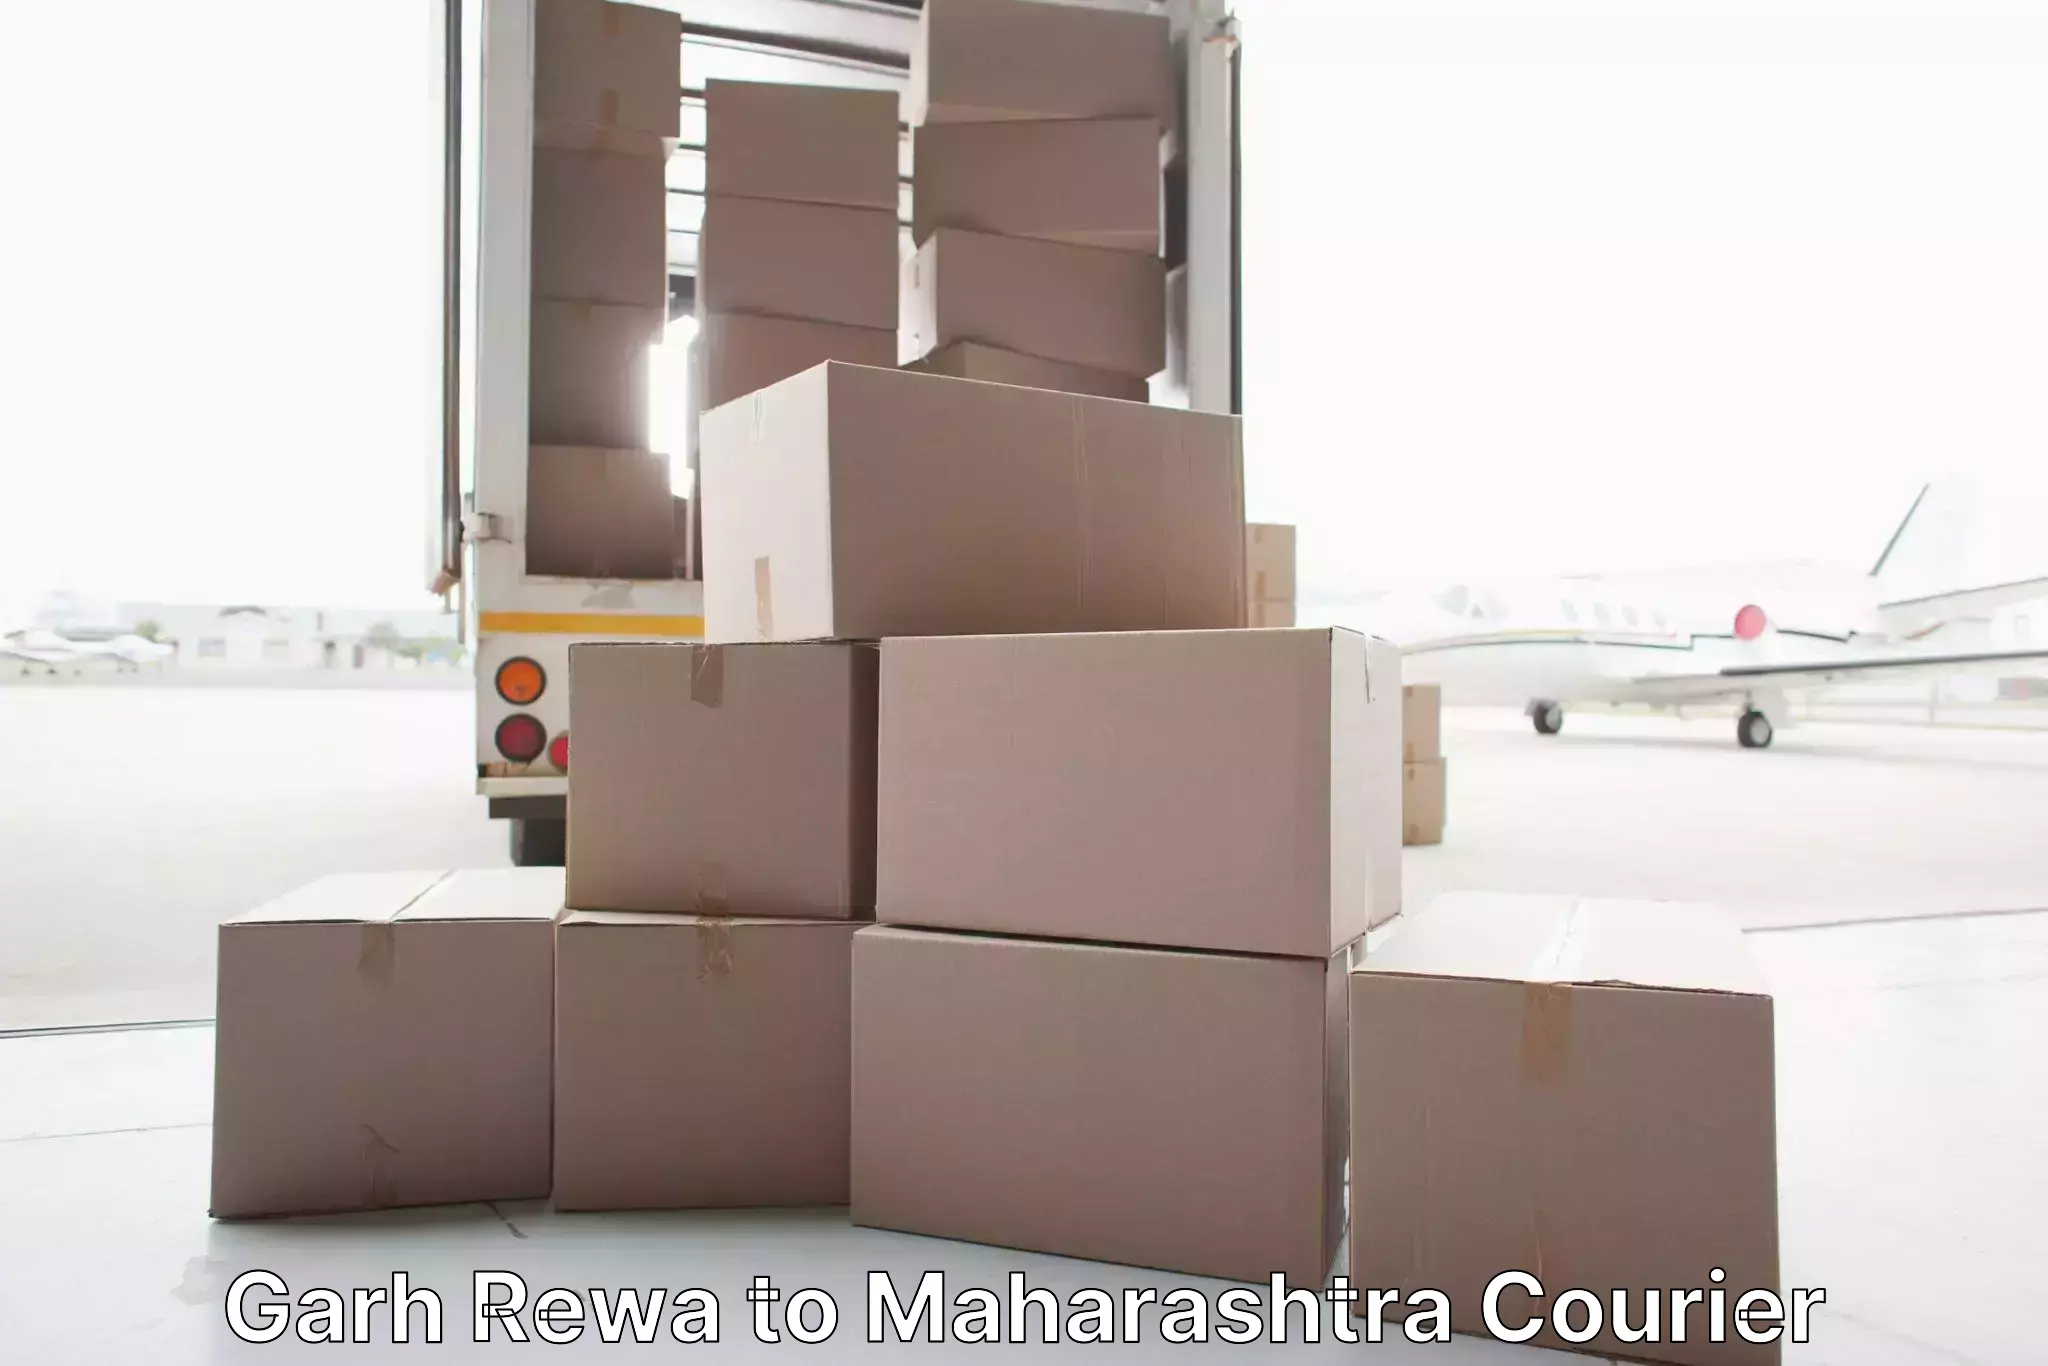 Skilled furniture transporters Garh Rewa to Virar